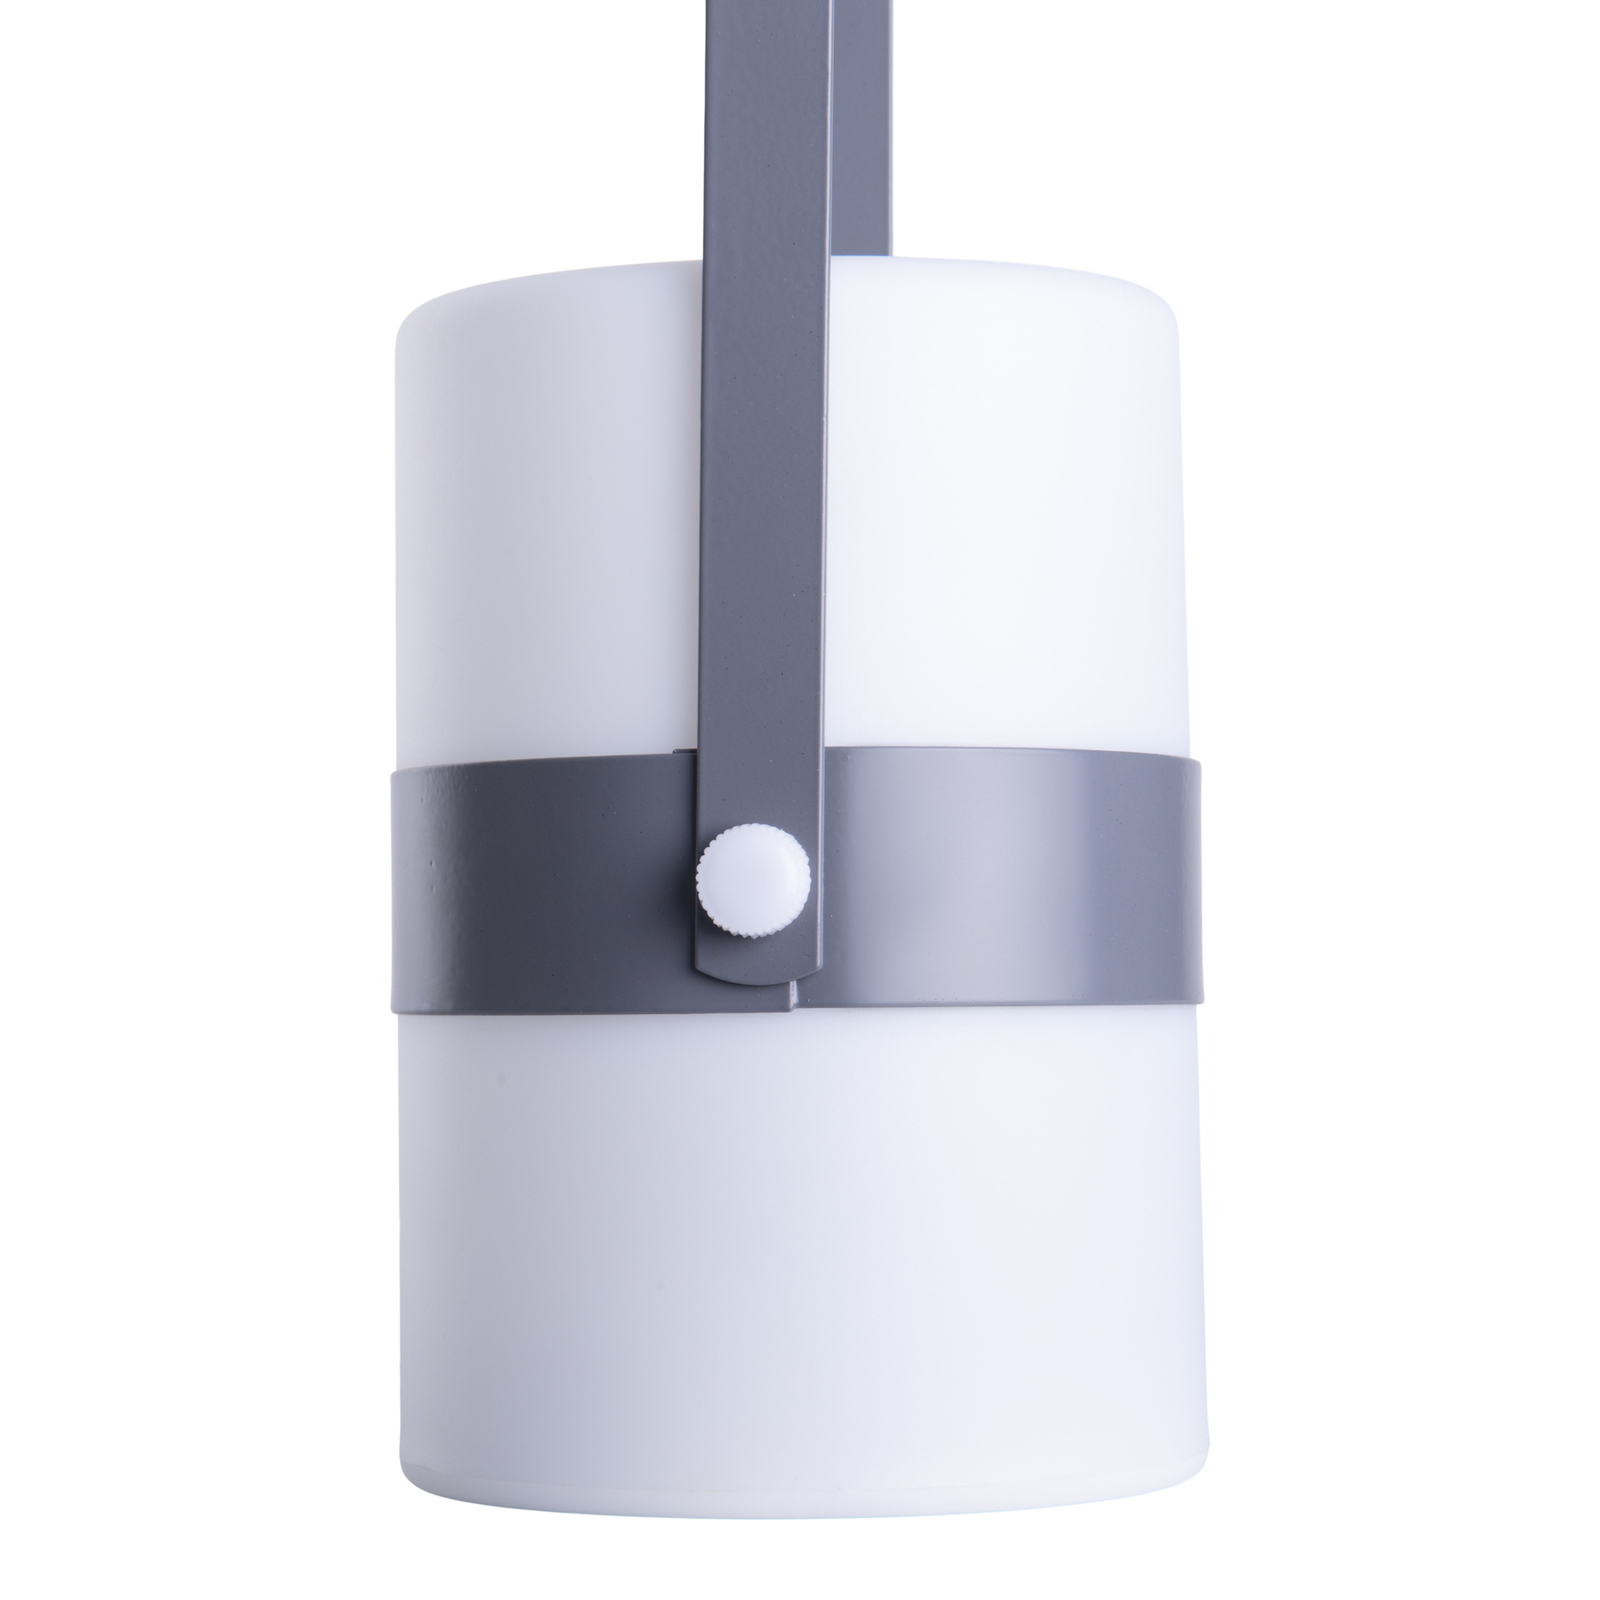 LED sfeerlamp Neo voor binnen met accu, grijs